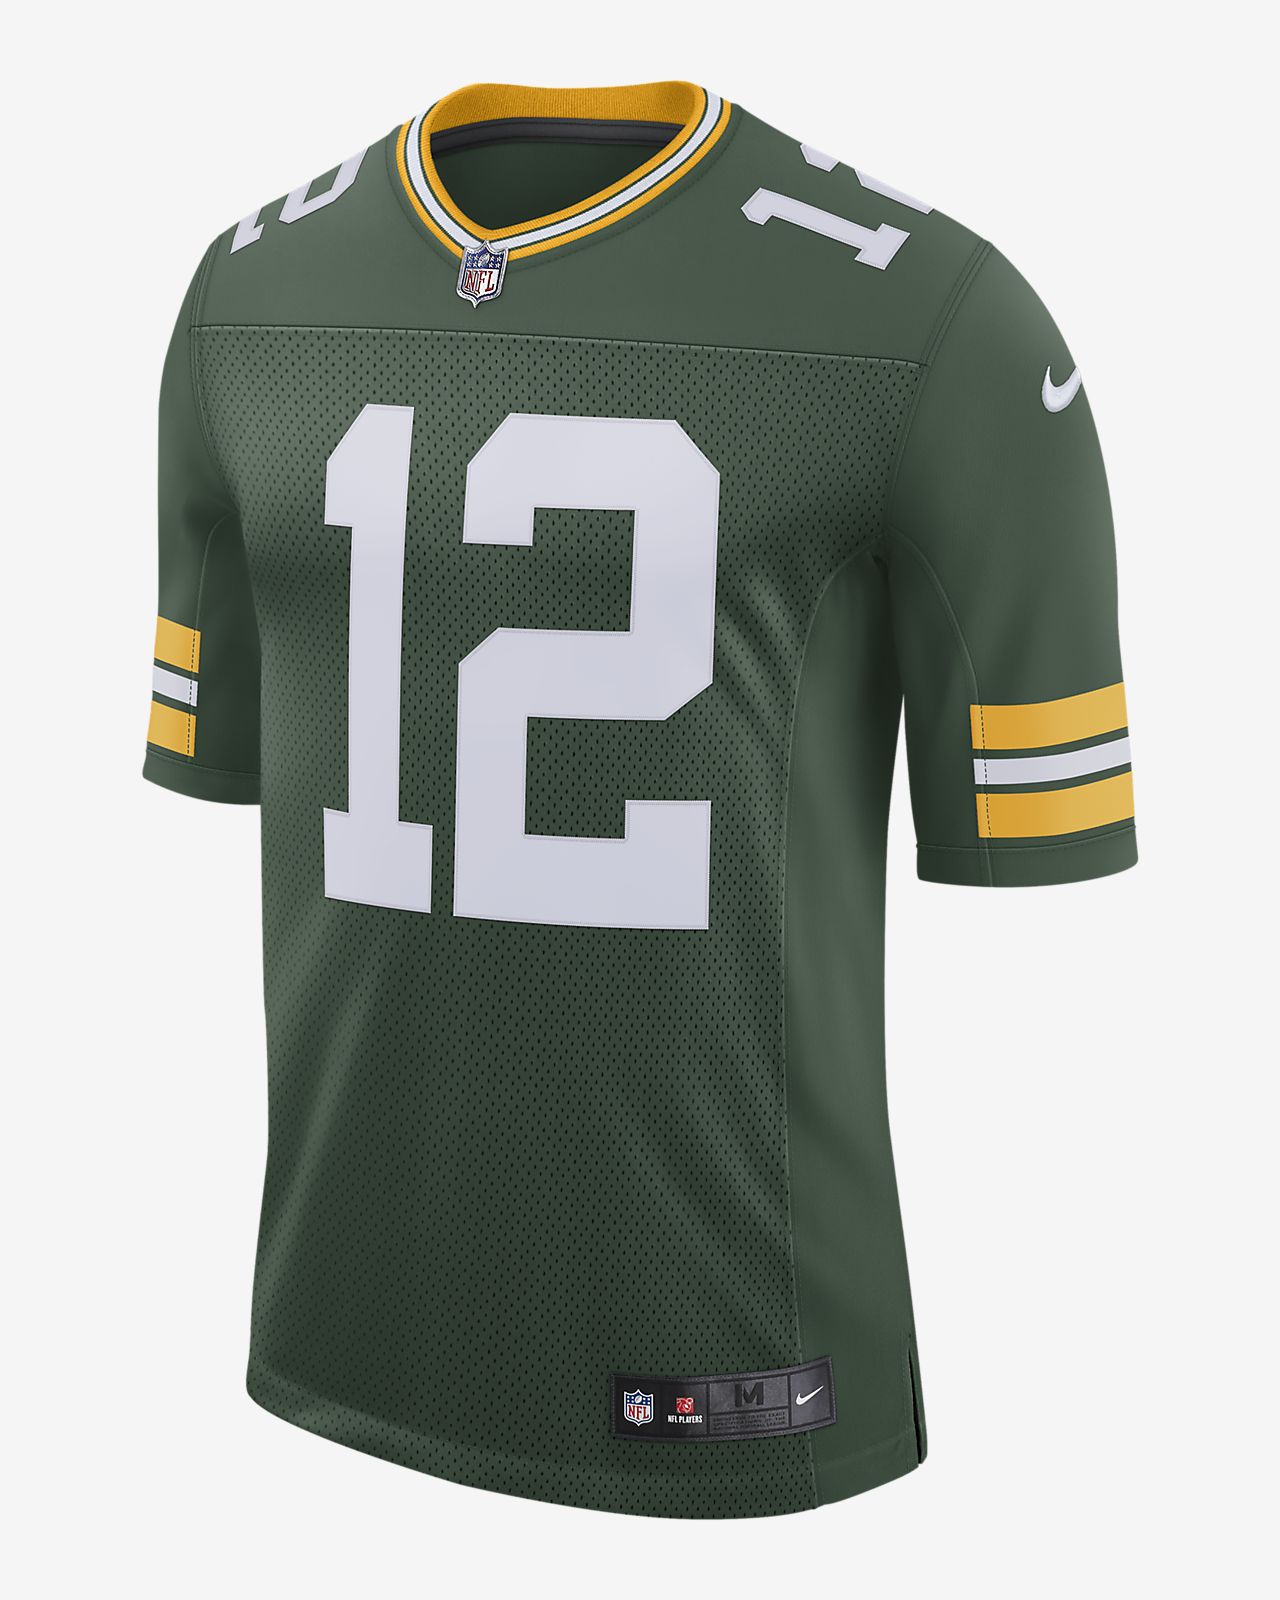 Camiseta de fútbol americano edición limitada para hombre NFL Green Bay Packers Vapor ...